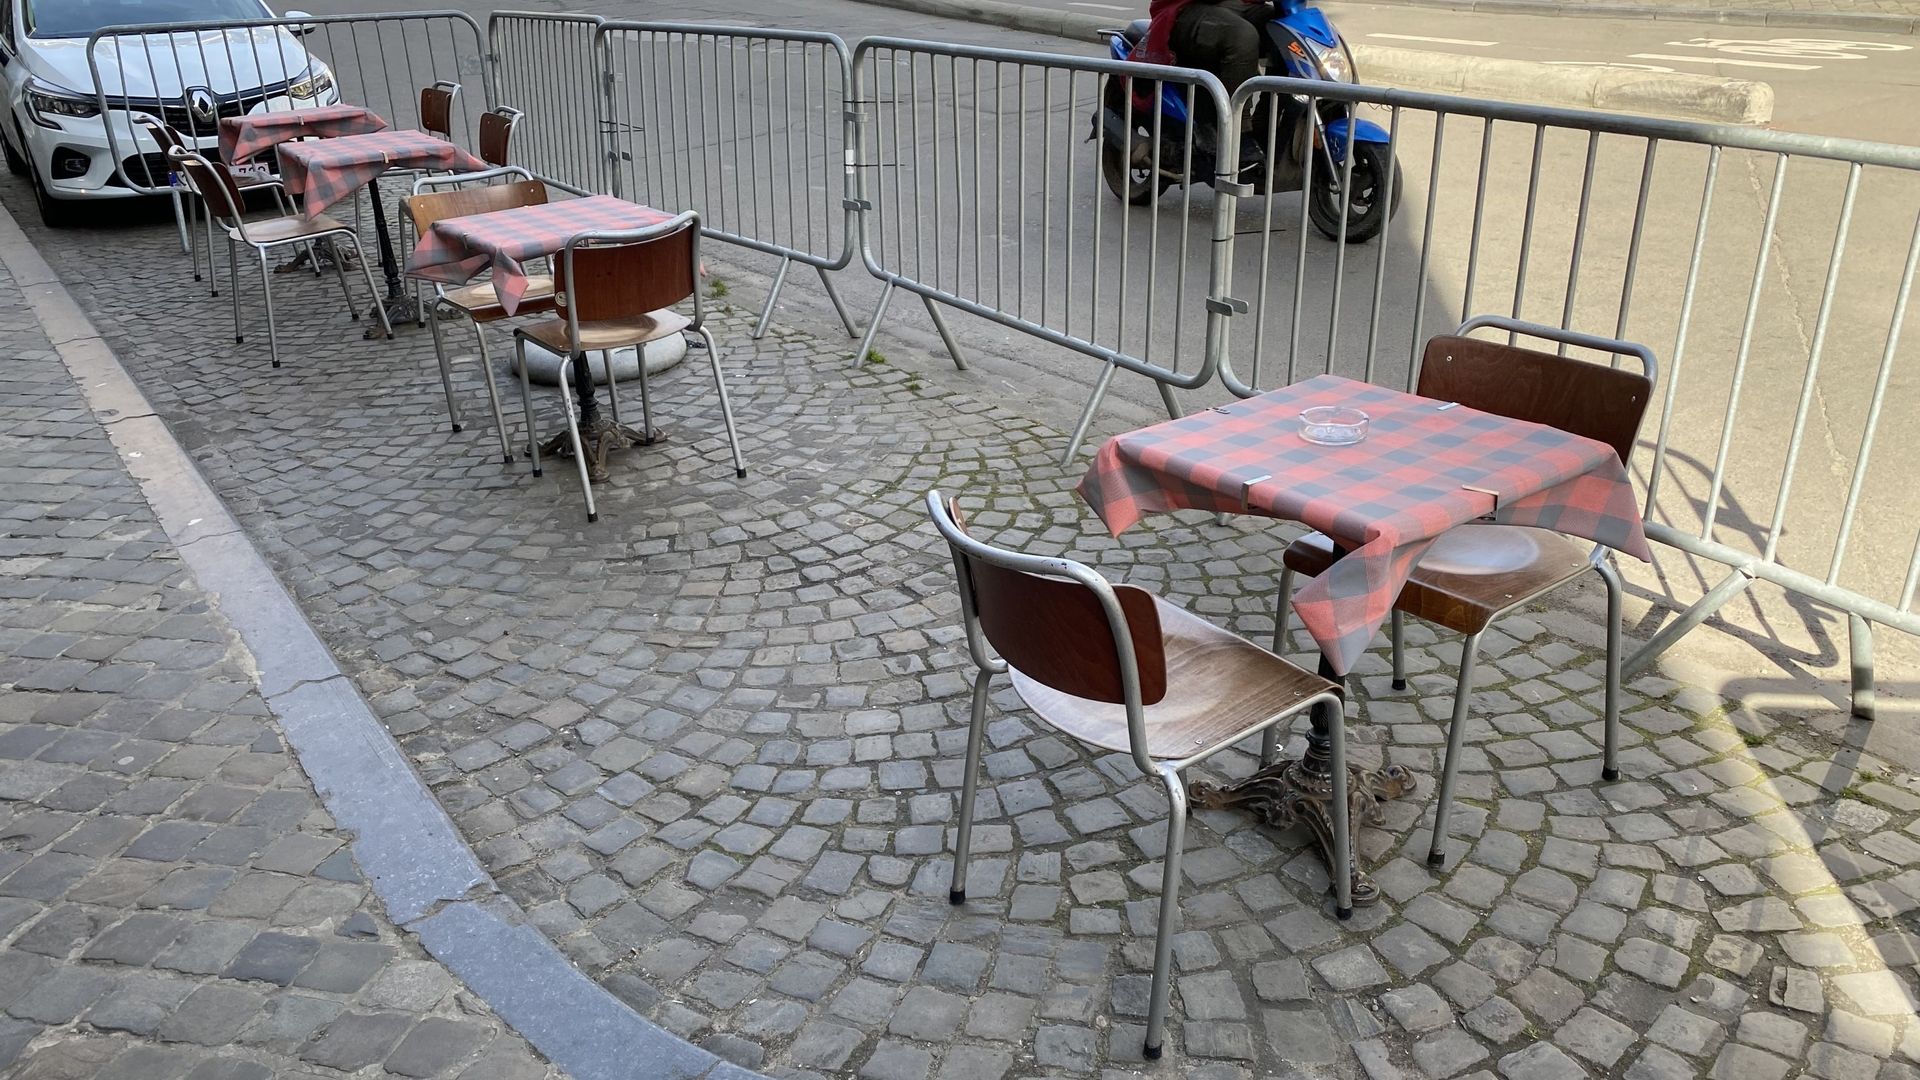 La terrasse de ce café de Liège s’est étendue sur d’anciennes places de parking